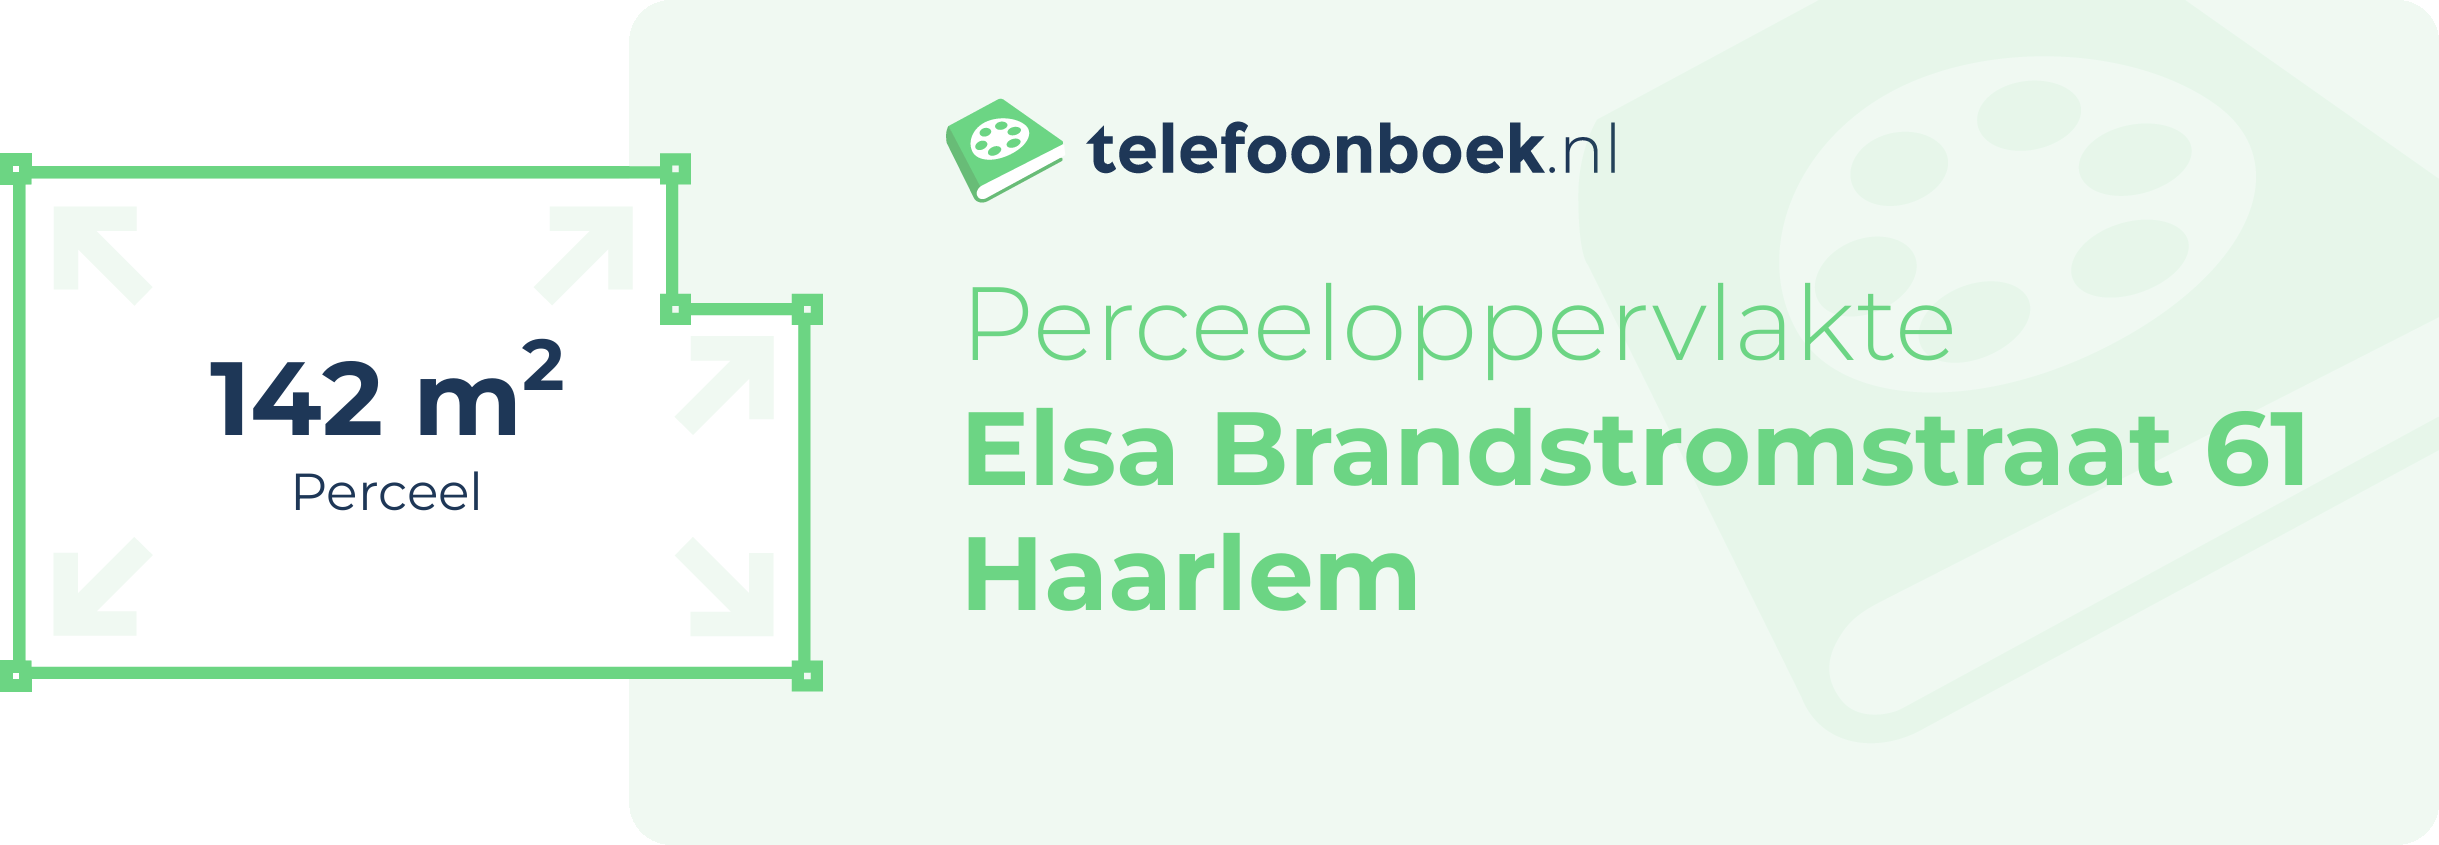 Perceeloppervlakte Elsa Brandstromstraat 61 Haarlem